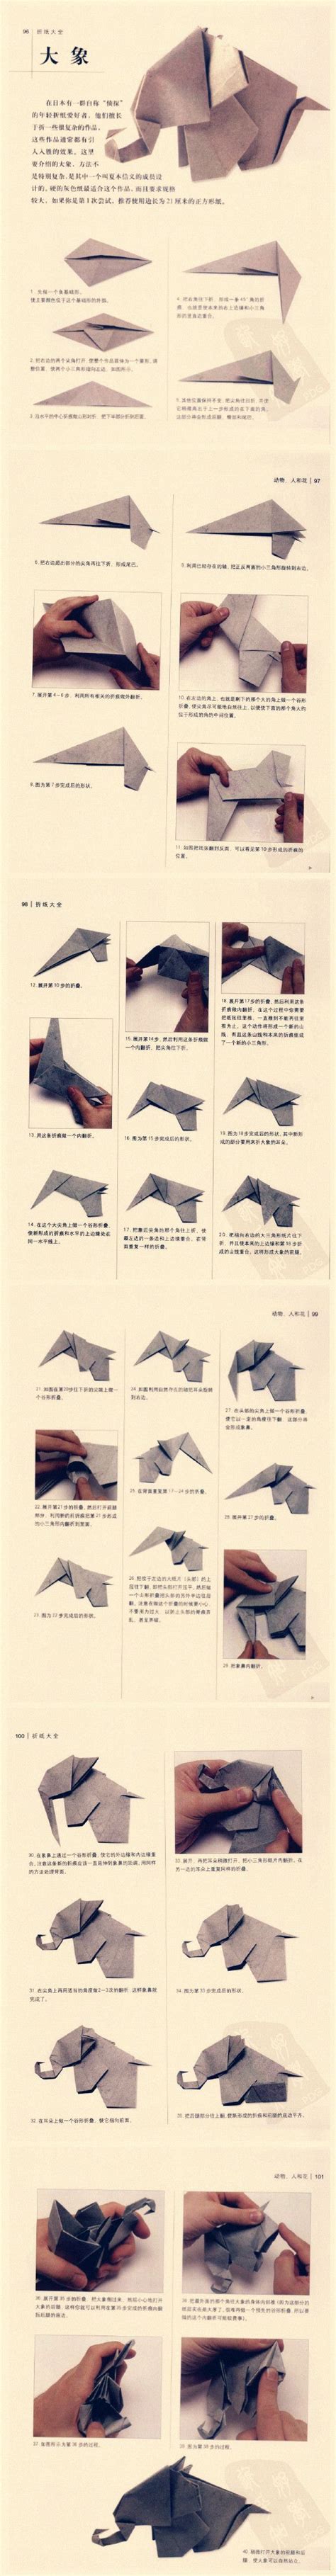 Origami Among Us Origami Idea